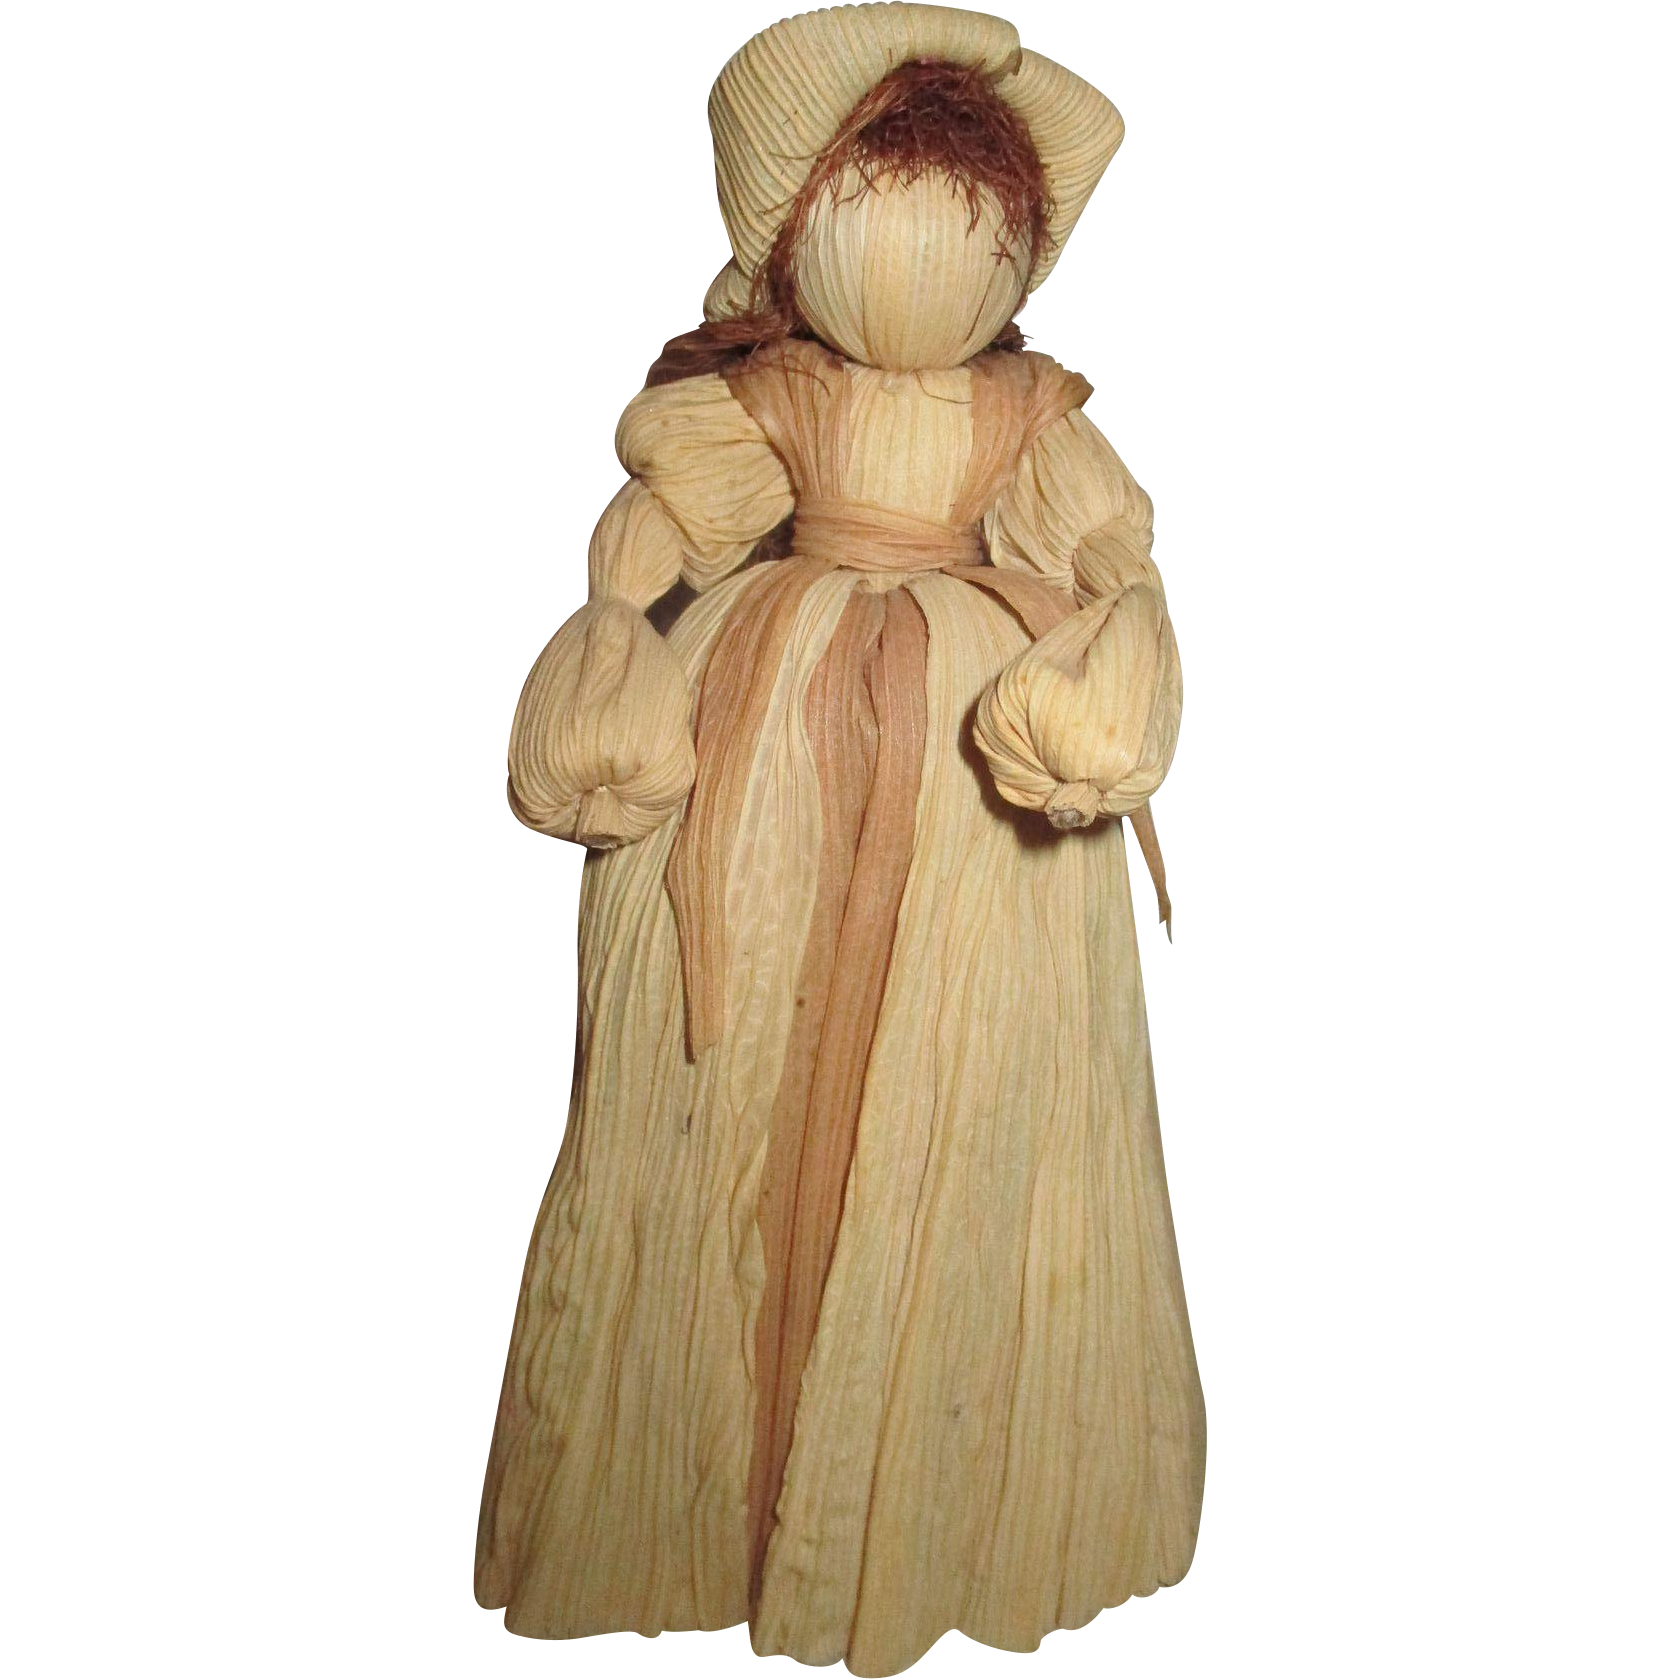 A cornhusk doll.